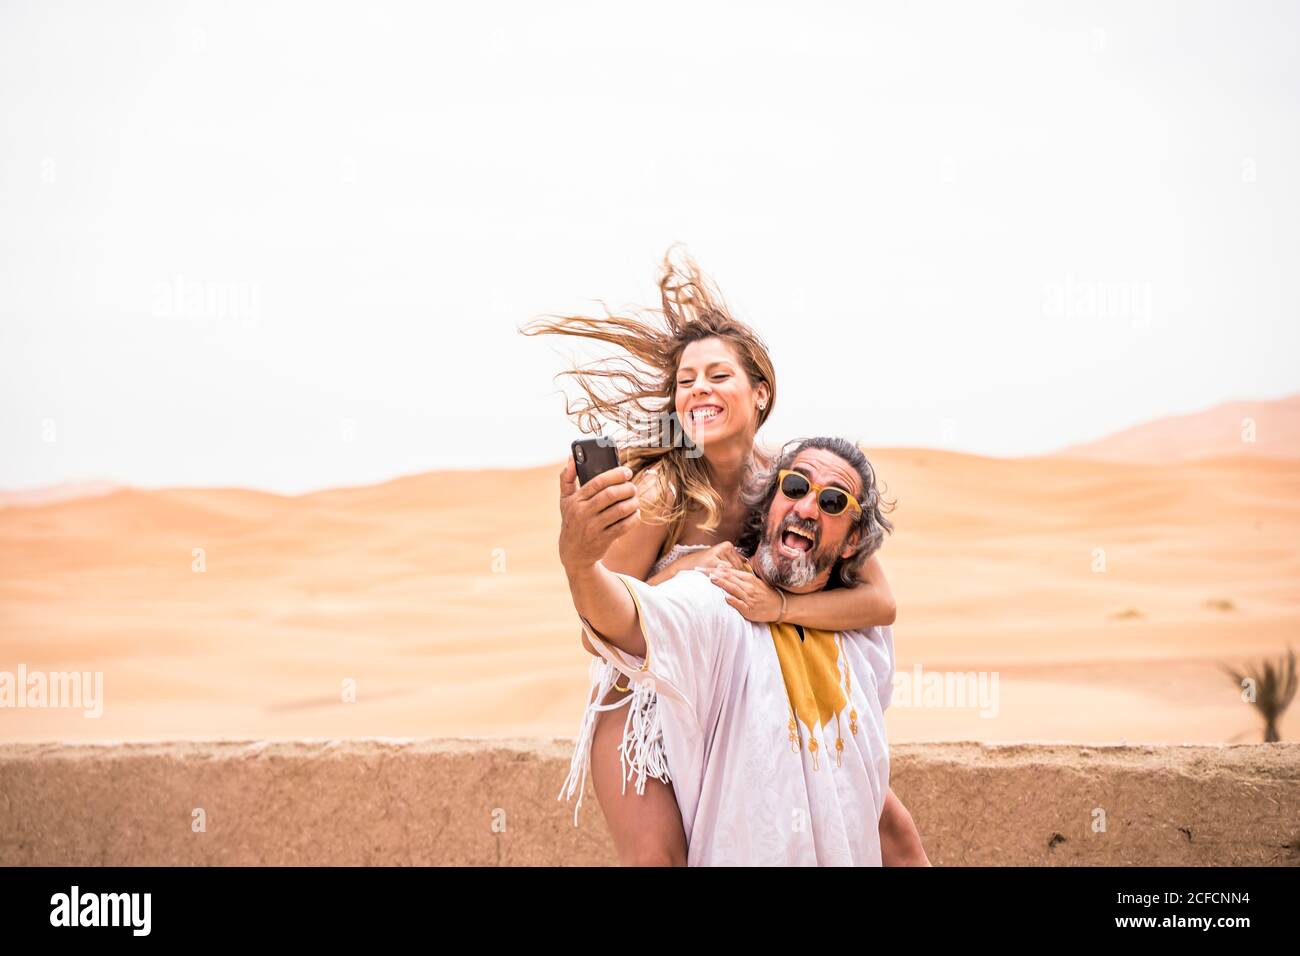 Uomo di mezza età con Piggyback donna che prende selfie in modo espressivo sulla terrazza contro il deserto sabbioso, Marocco Foto Stock